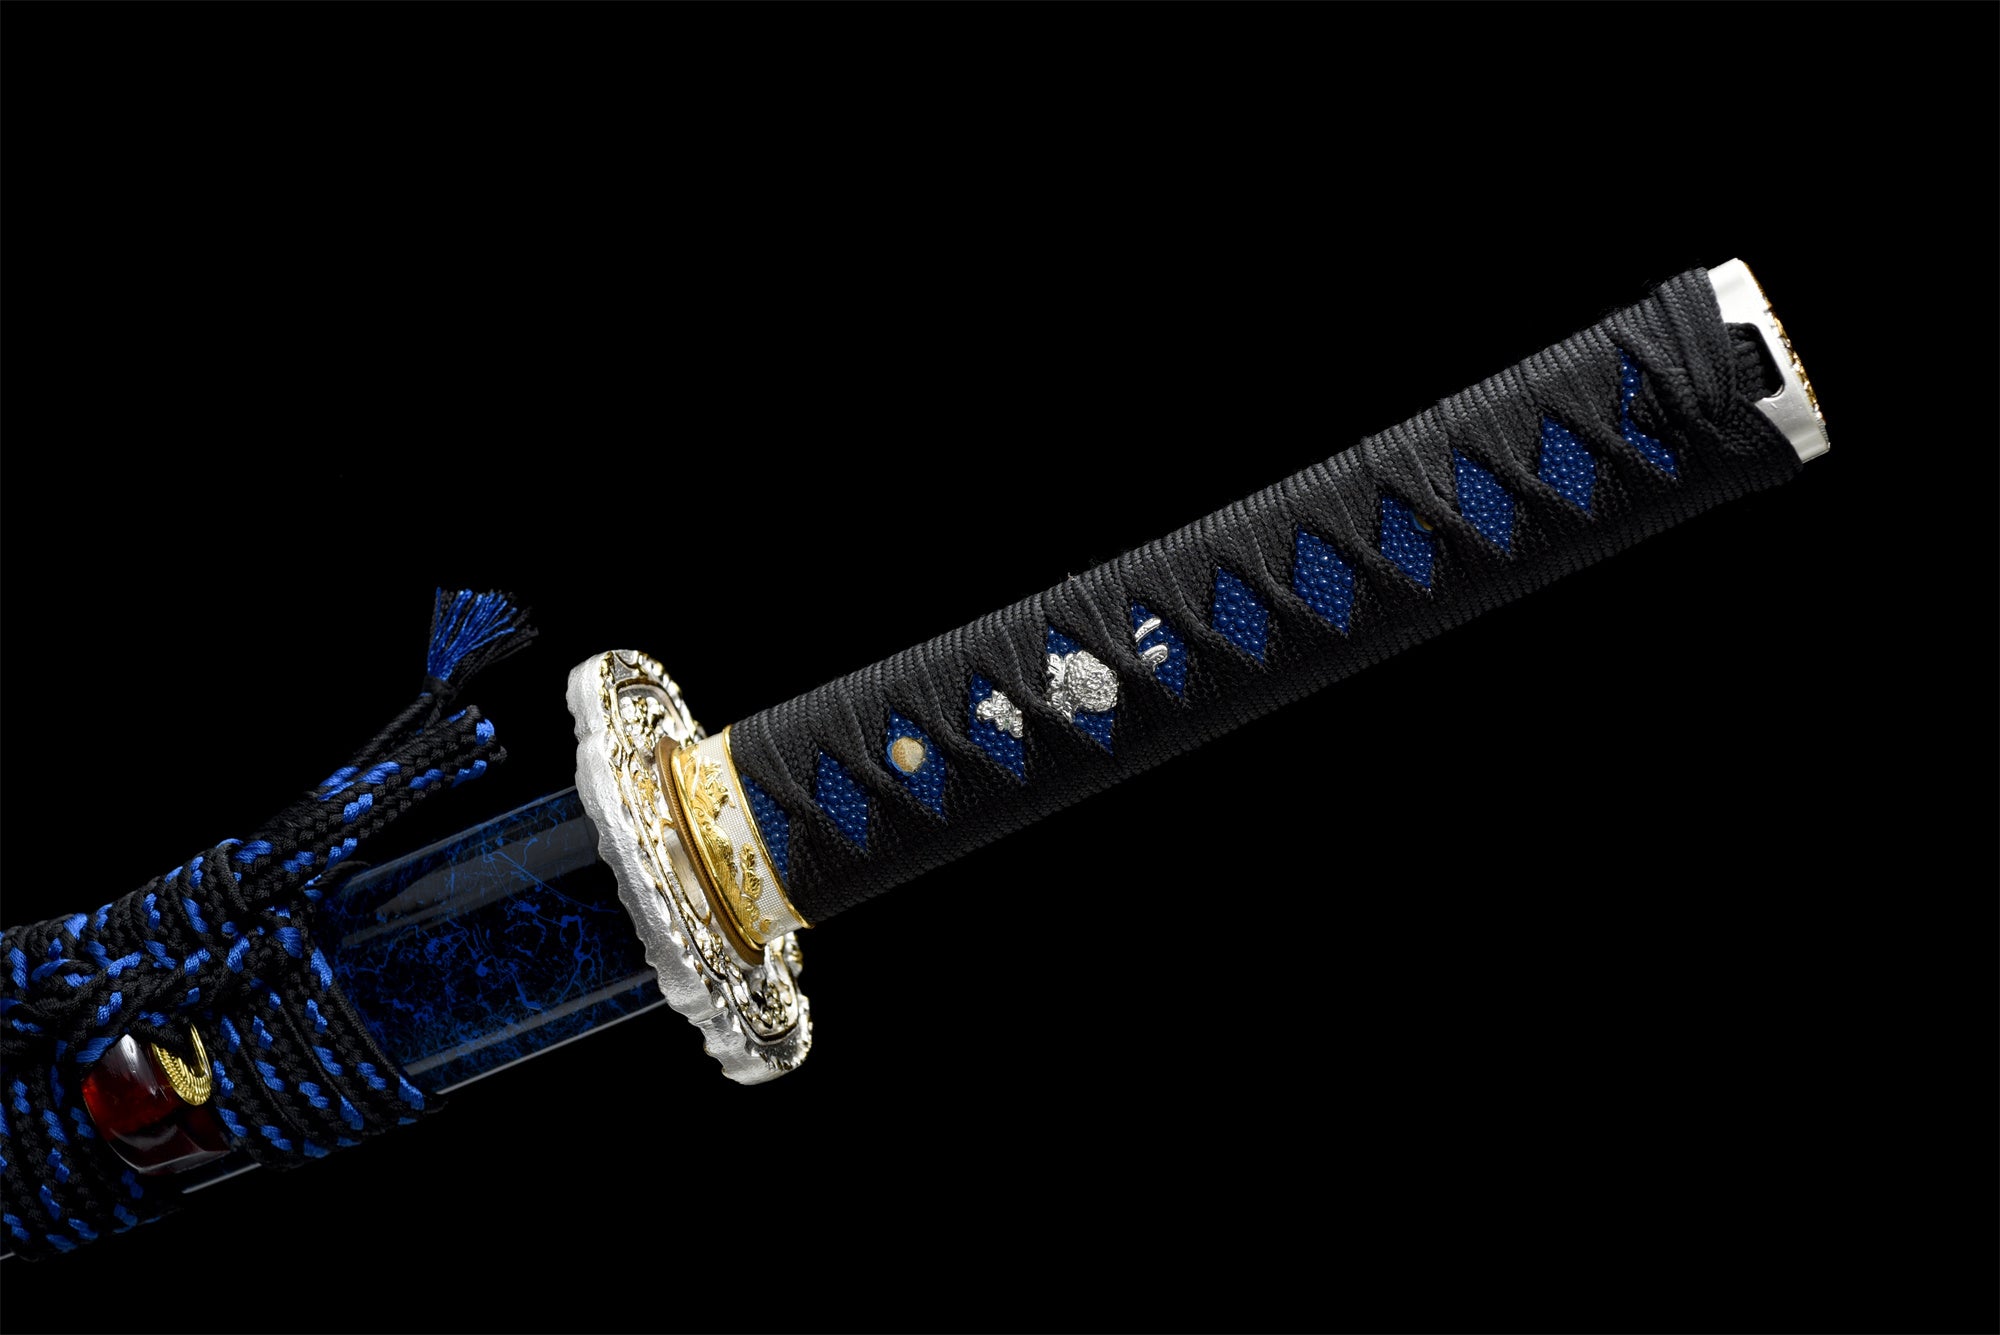 Yaomei Wakizashi Sword,Baked Blue Blade,Japanese Samurai Sword,Real Handmade Wakizashi,High manganese steel